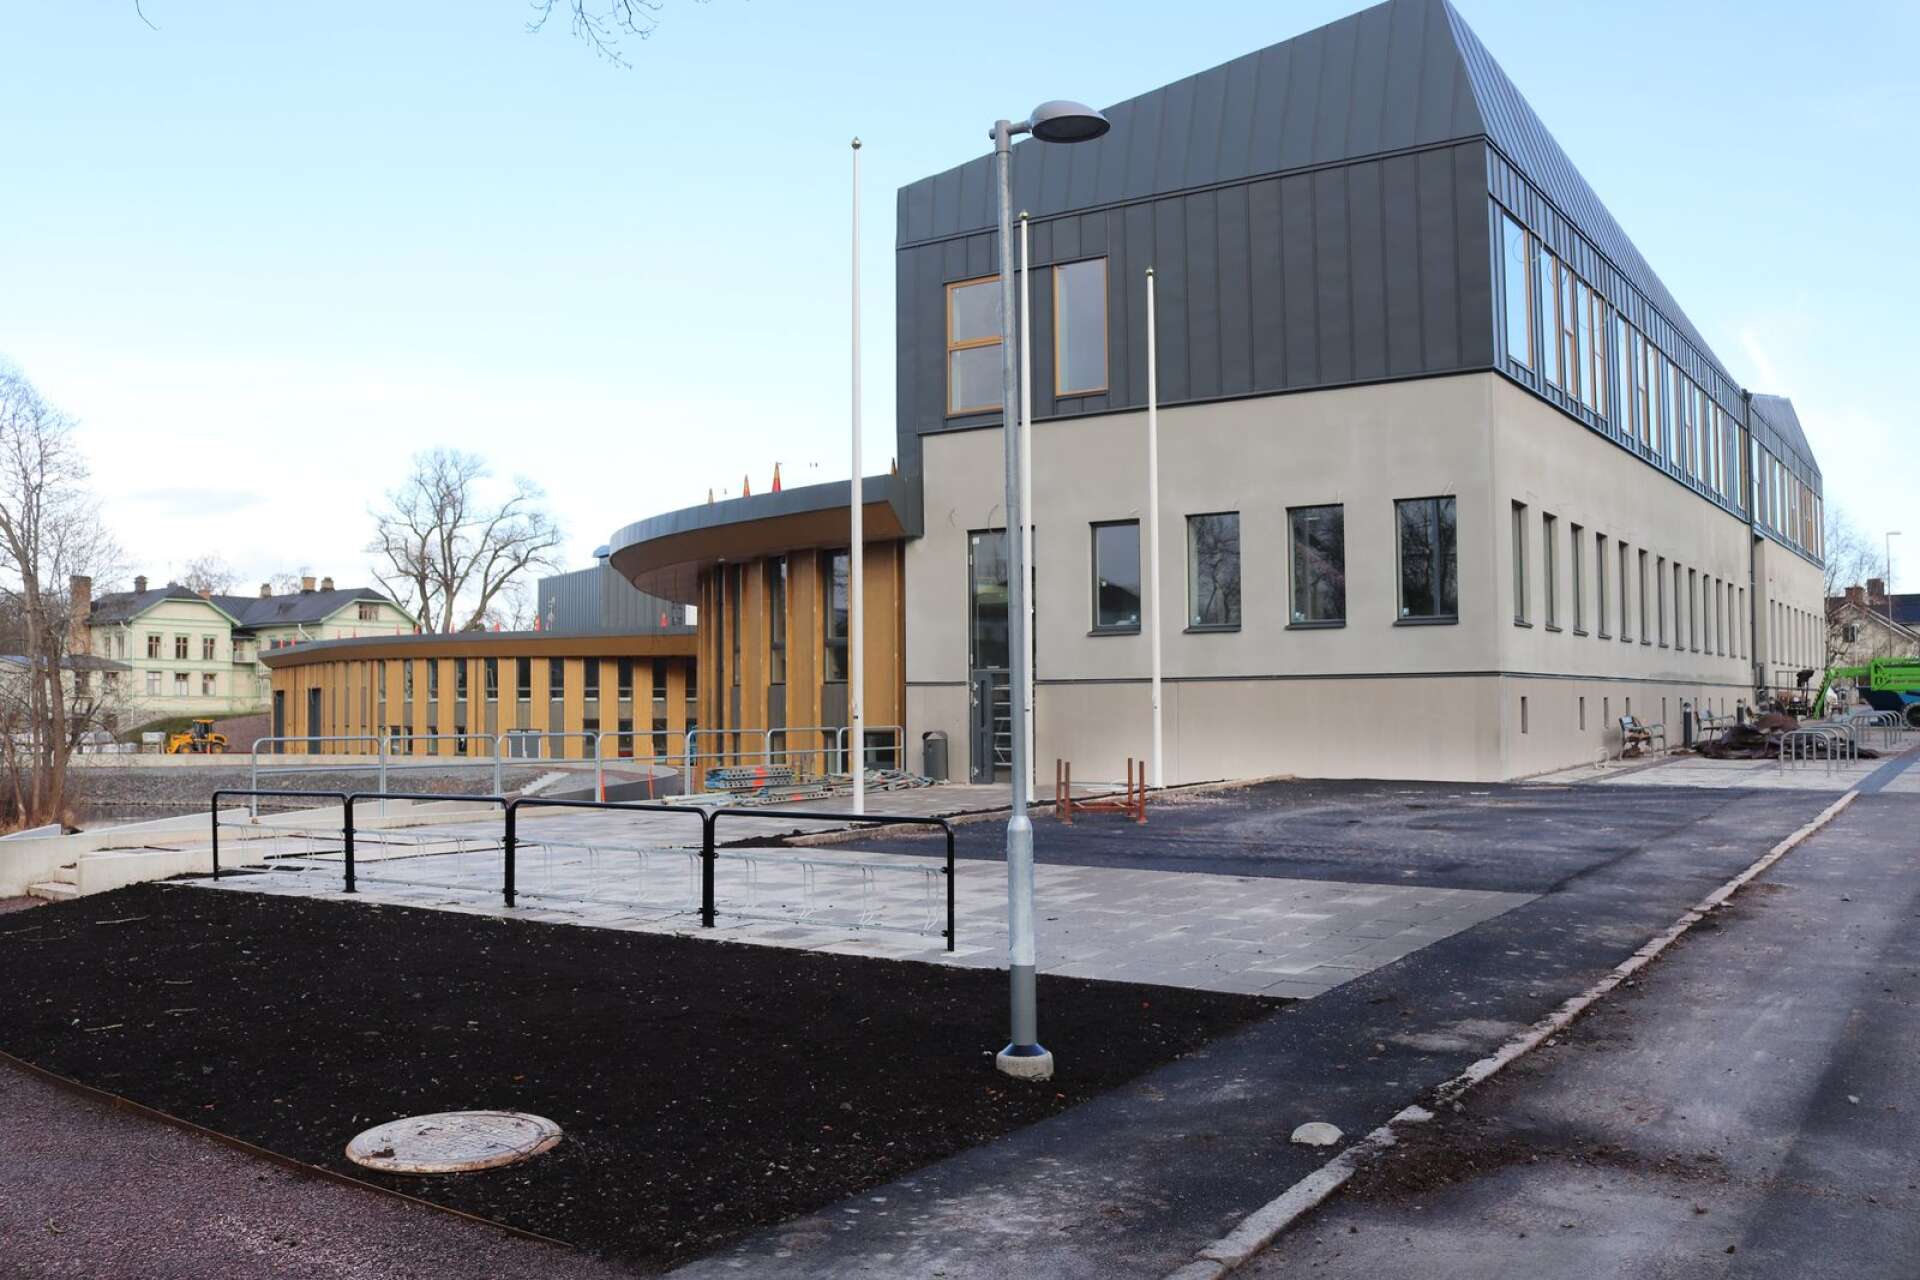 Bygget har Kristinehamns teknik- och innovationscenter, KTIC, har lett till en infekterad tvist mellan Kristinehamns kommun och entreprenören, Noctor bygg.